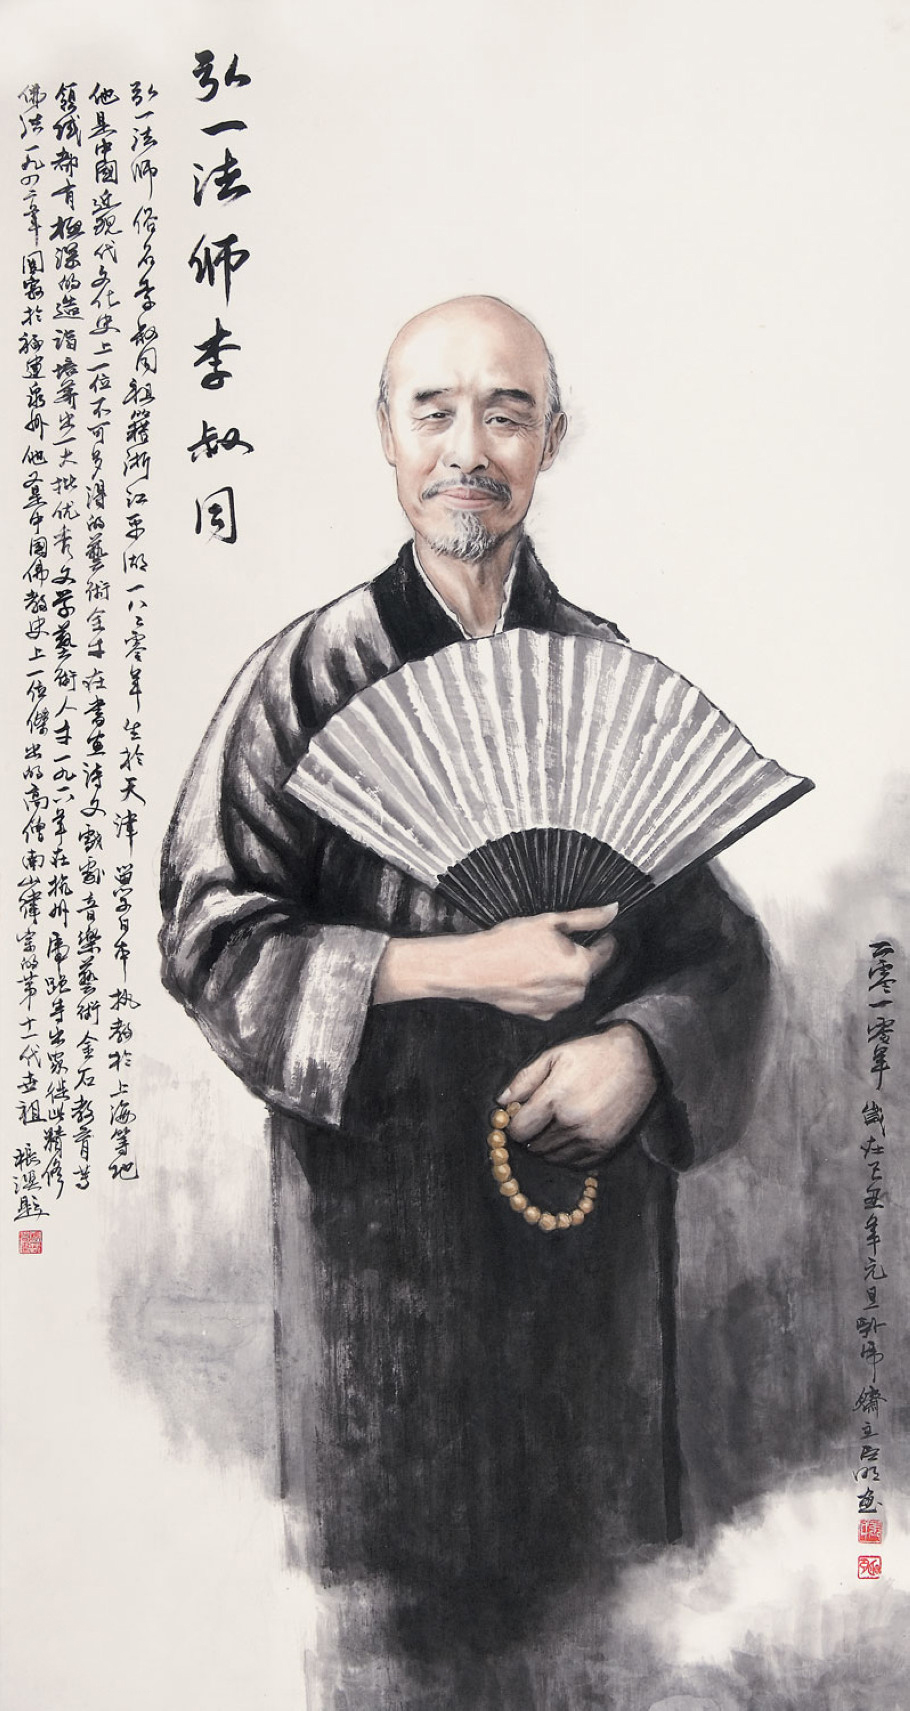 他中国当代高僧，也是著名的艺术家、书法家、音乐家、教育家